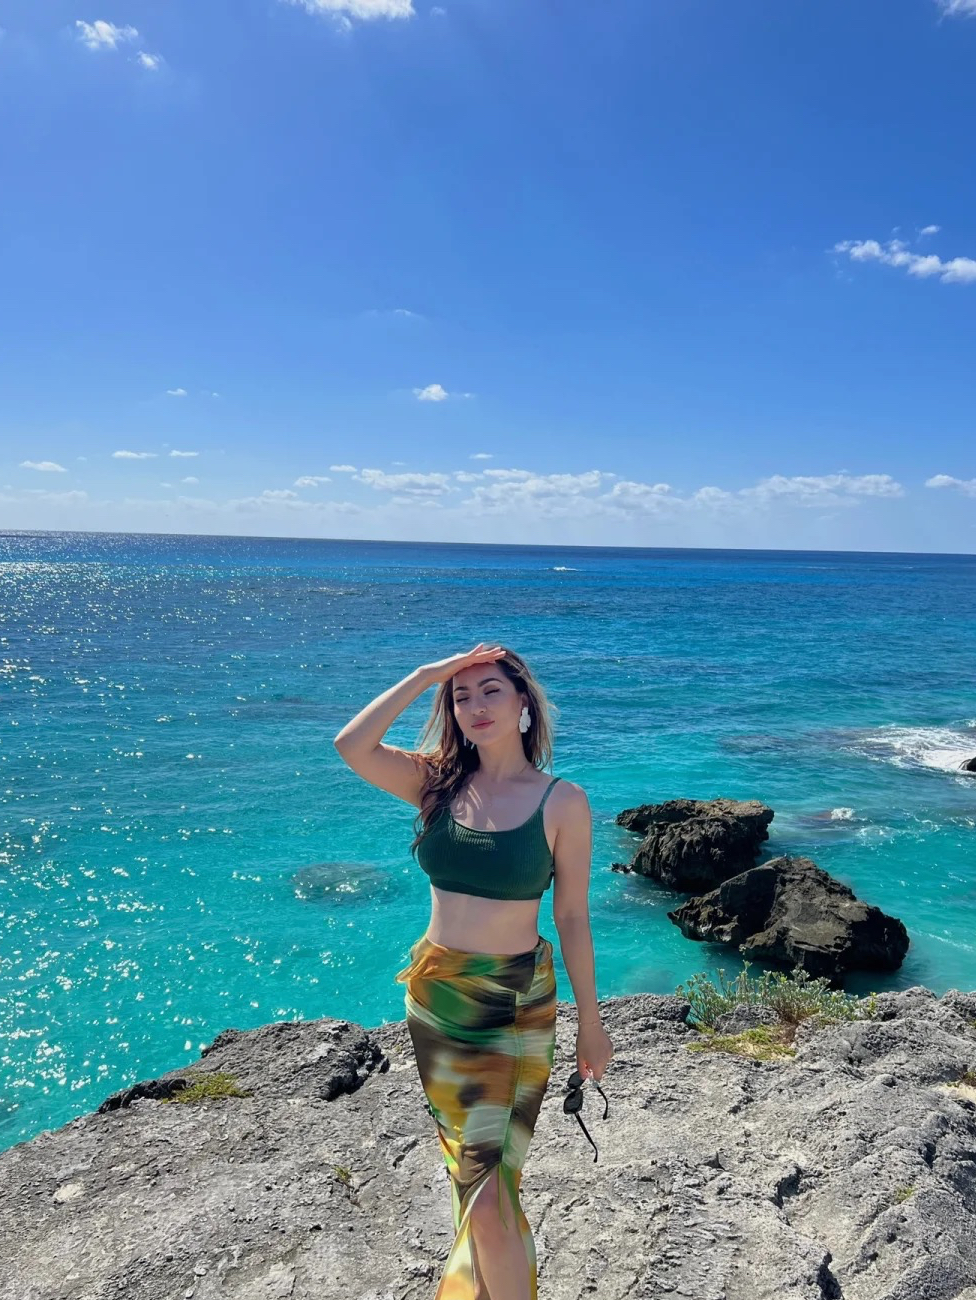 百慕大这么多年被我们误会了它是个美丽海岛百慕大其实是个非常美丽的英属小岛这里有我看过最美的大海 蓝到